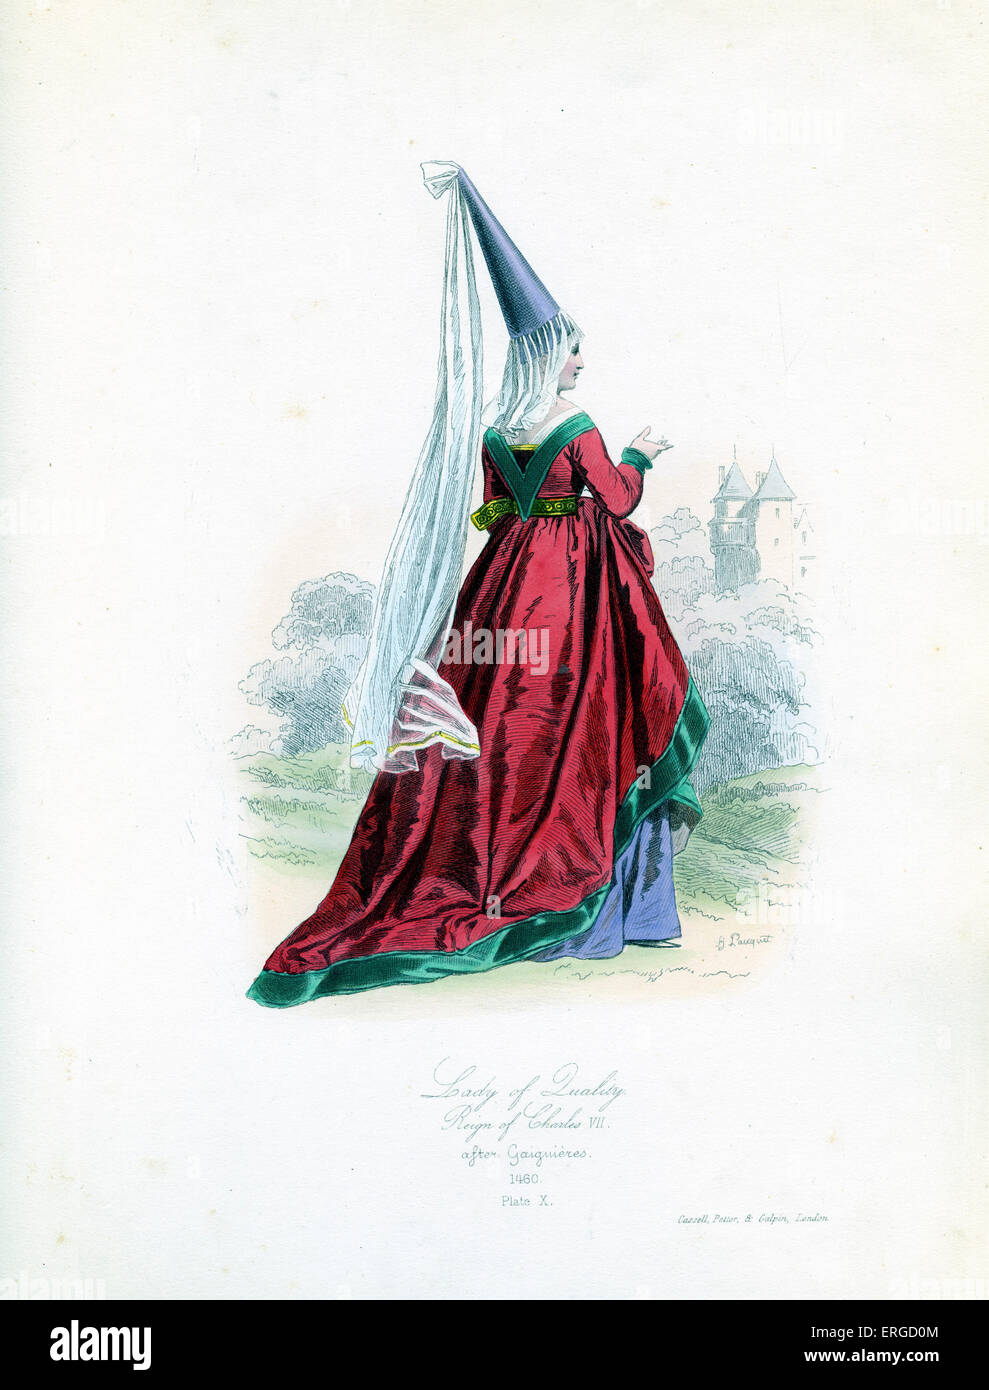 Edle Frau von Herrschaft von Charles VII von Frankreich, 1460 - Kupferstich von Hippolyte Pauquet, nach Gaiguières. CVII: König der Stockfoto